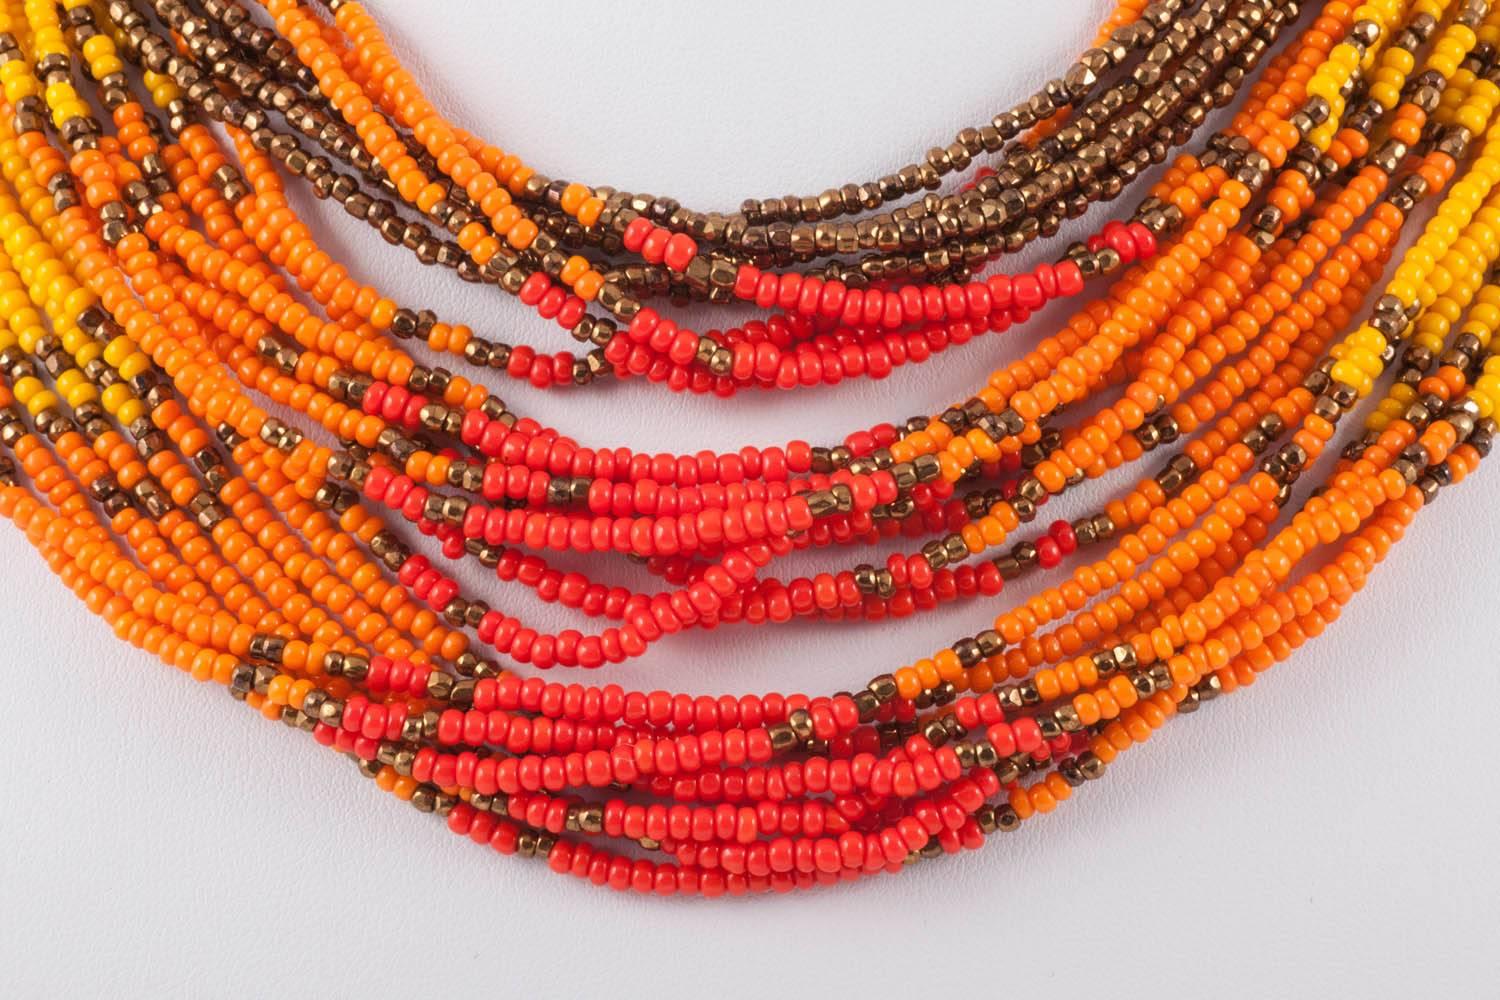 Eine sehr lebendige und wunderbar fröhliche mehrreihige Perlenkette von Miriam Haskell, die mit gelben, ockerfarbenen, orangefarbenen und roten  farbige kleine Perlen, durchsetzt mit bronzefarbenen Perlen, mit einer Anspielung auf indianisches